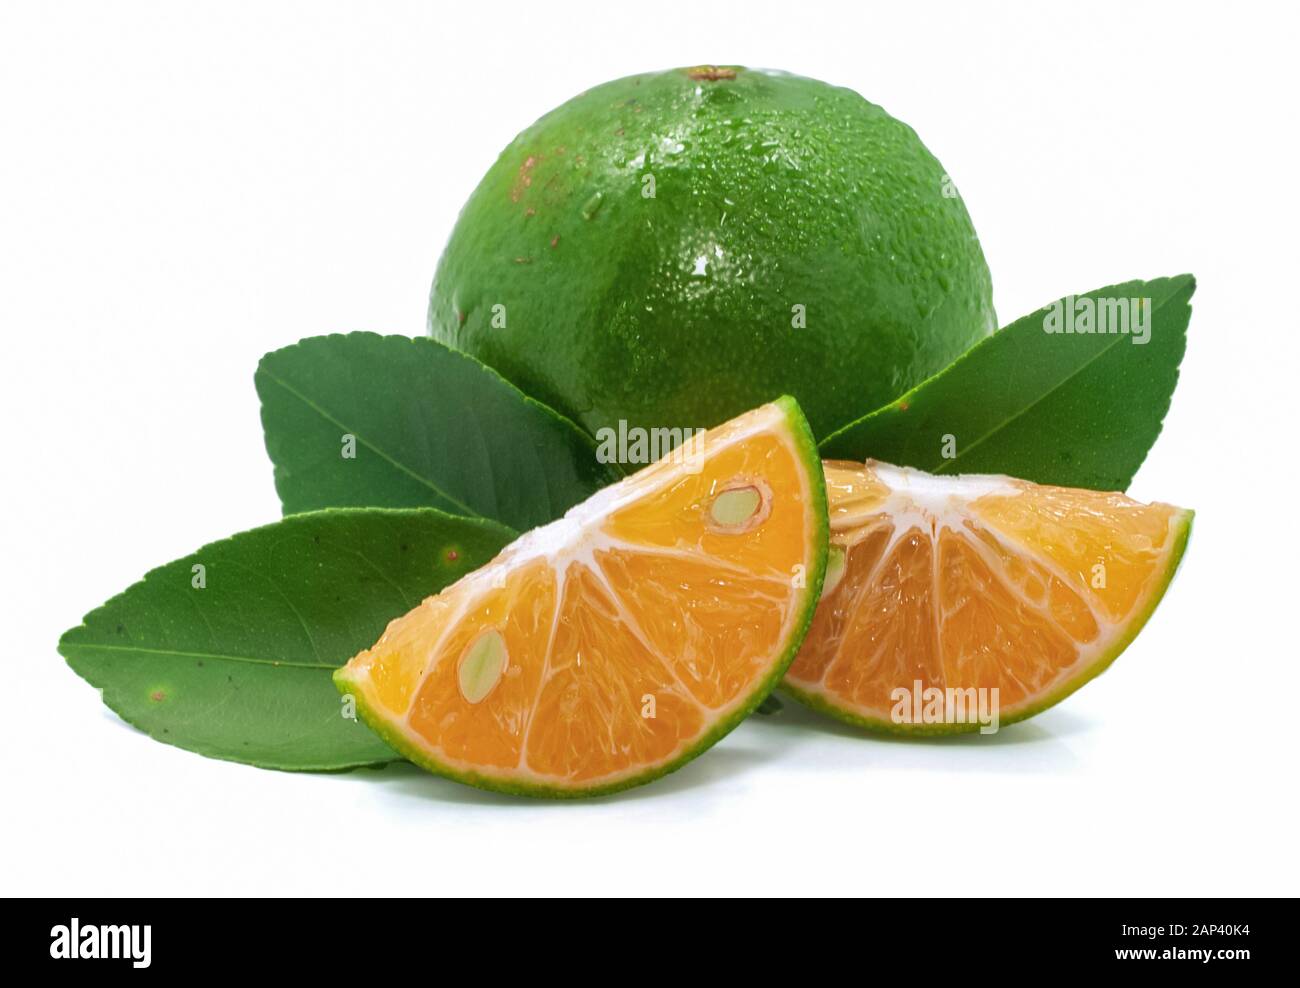 Einzelnes Objekt aus grün orangefarbenem Obst isoliert auf weißem Hintergrund Stockfoto